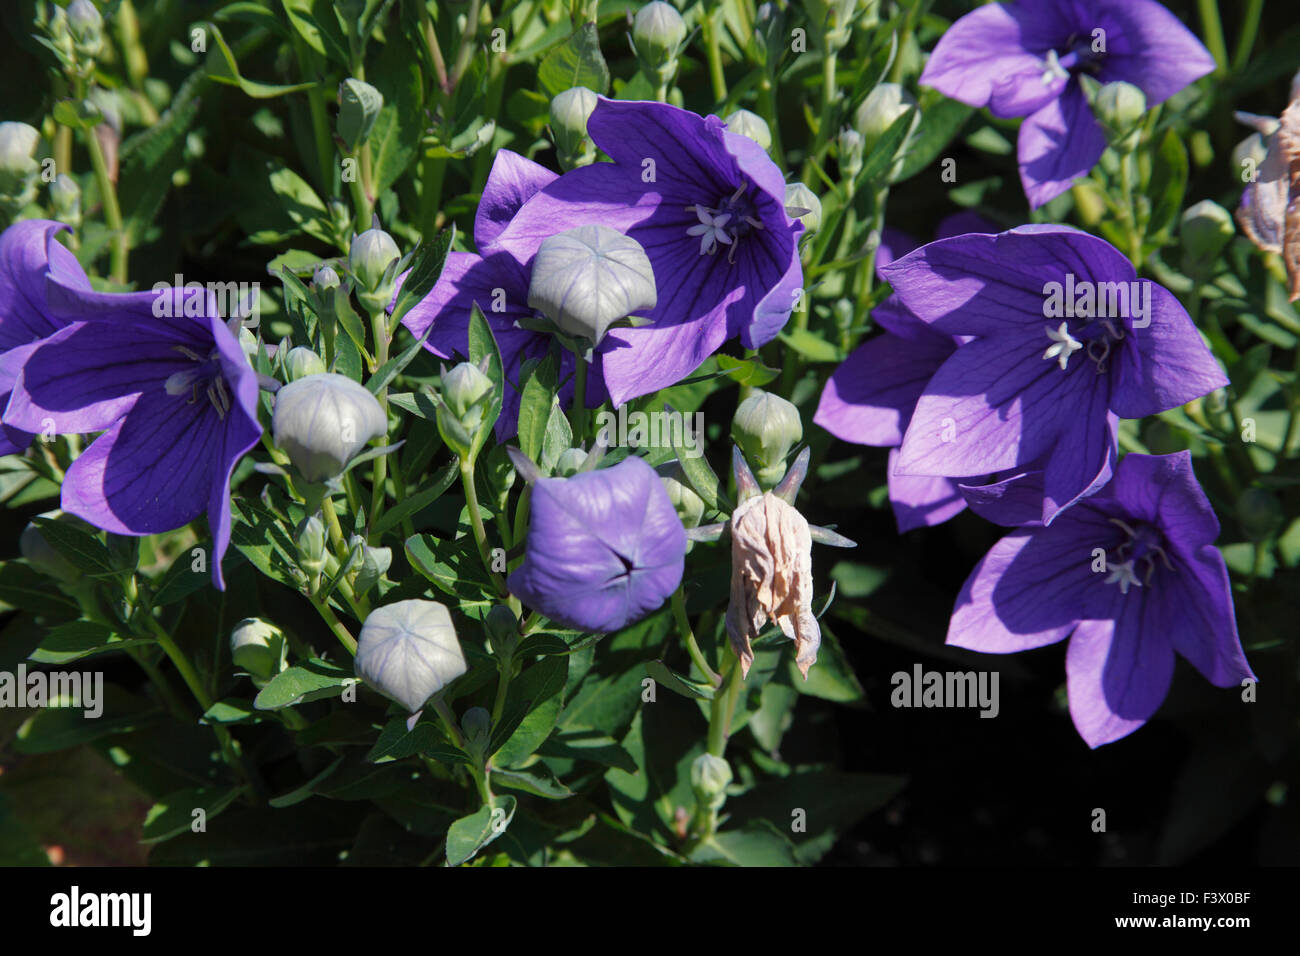 Platycodon grandiflorus 'Mariesii' close up of flowers Stock Photo